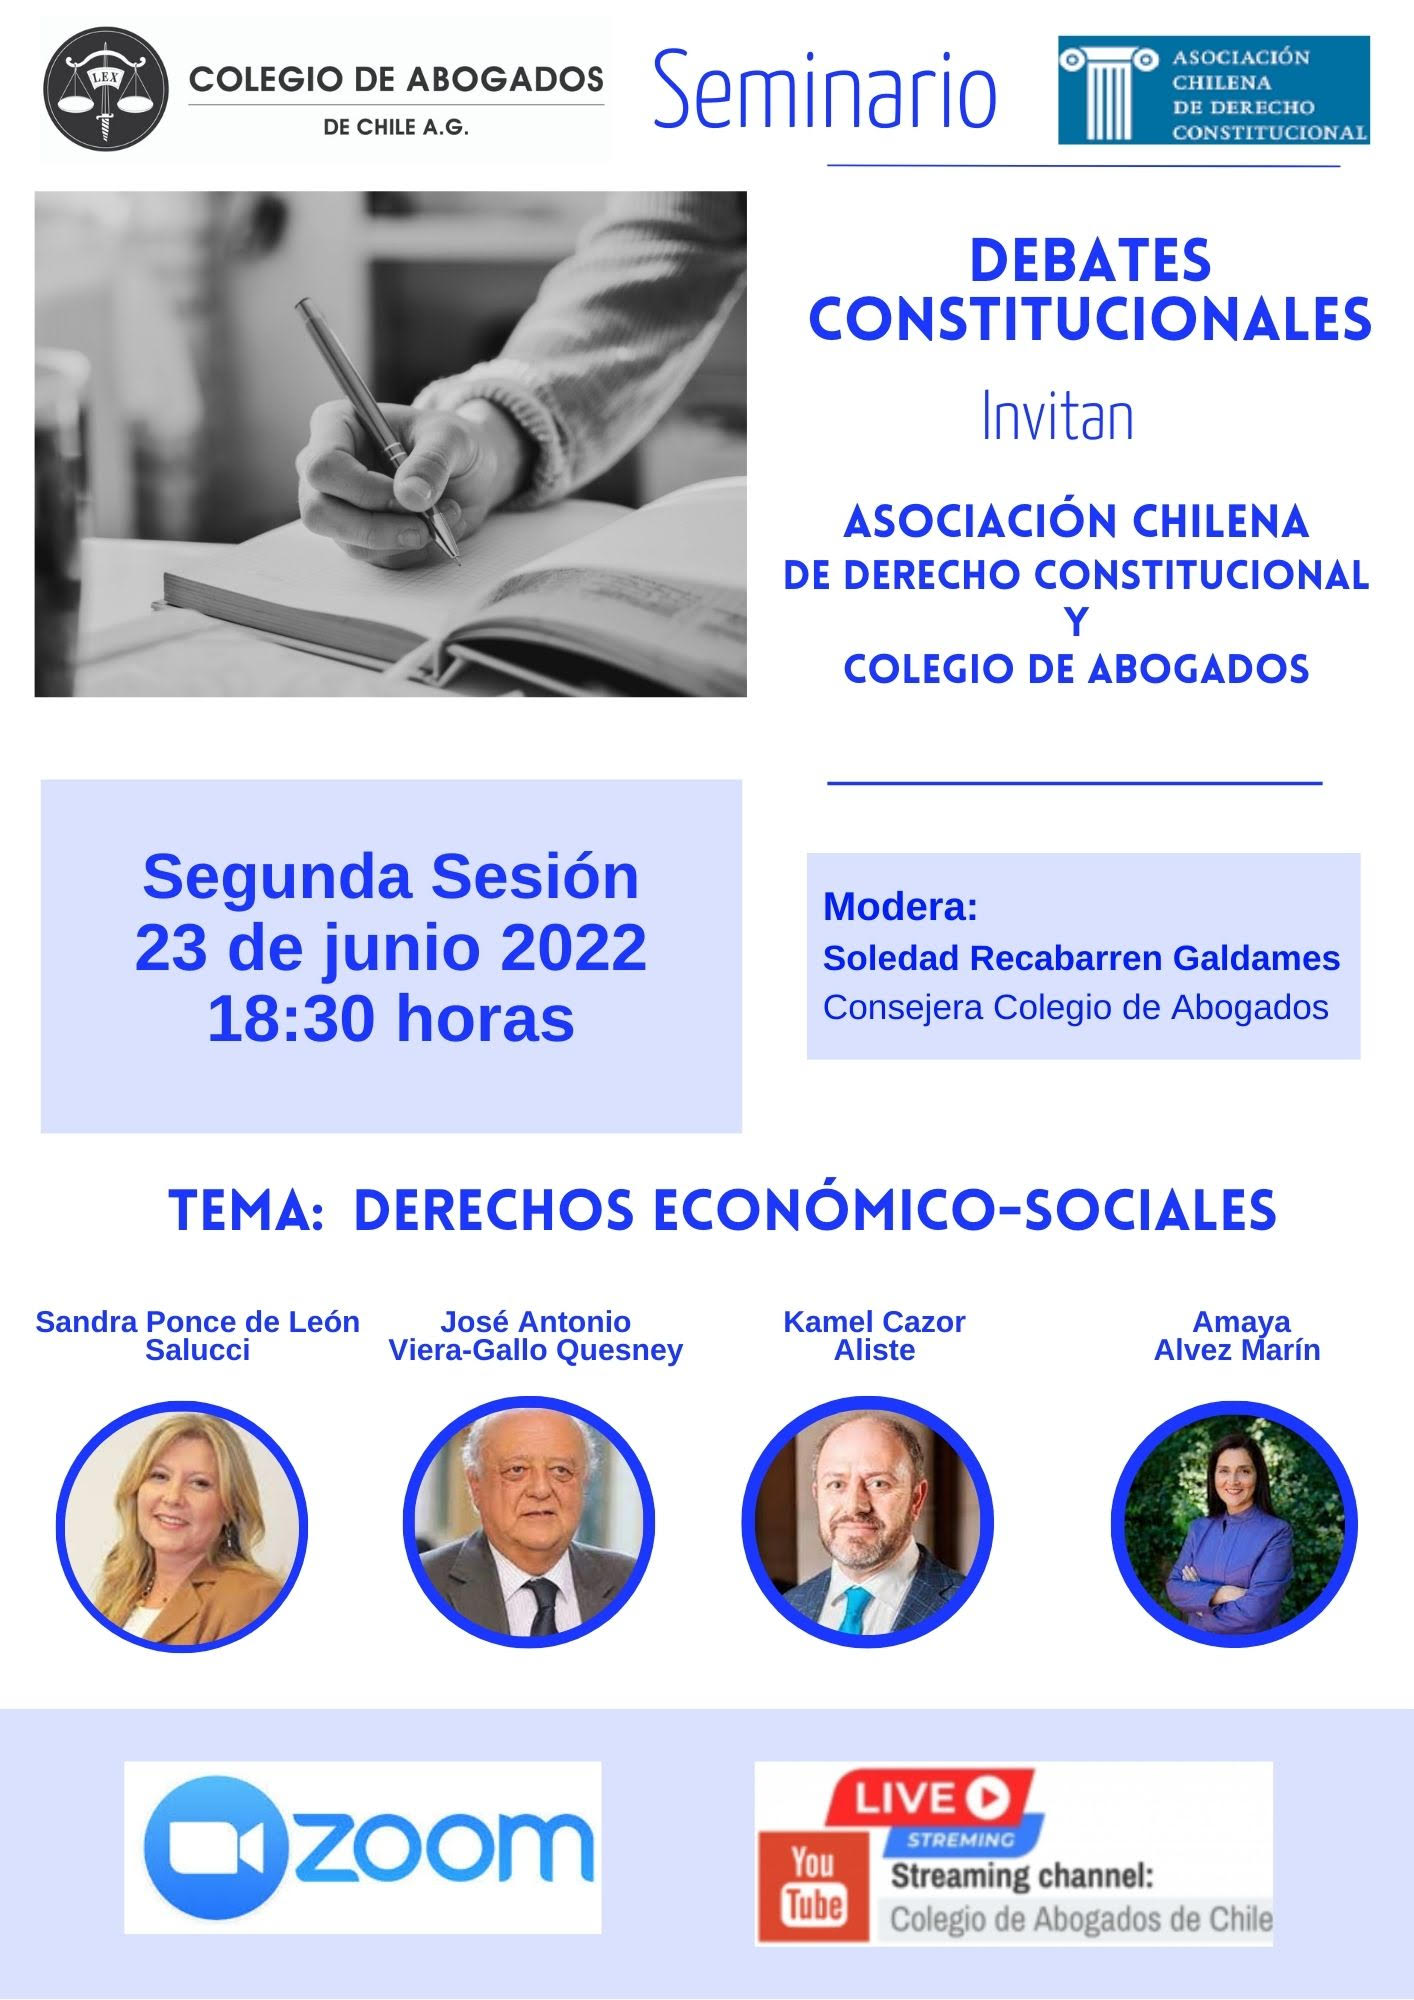 Asociación Chilena de Derecho Constitucional invita a “Debates Constitucionales: Derechos económico-sociales”